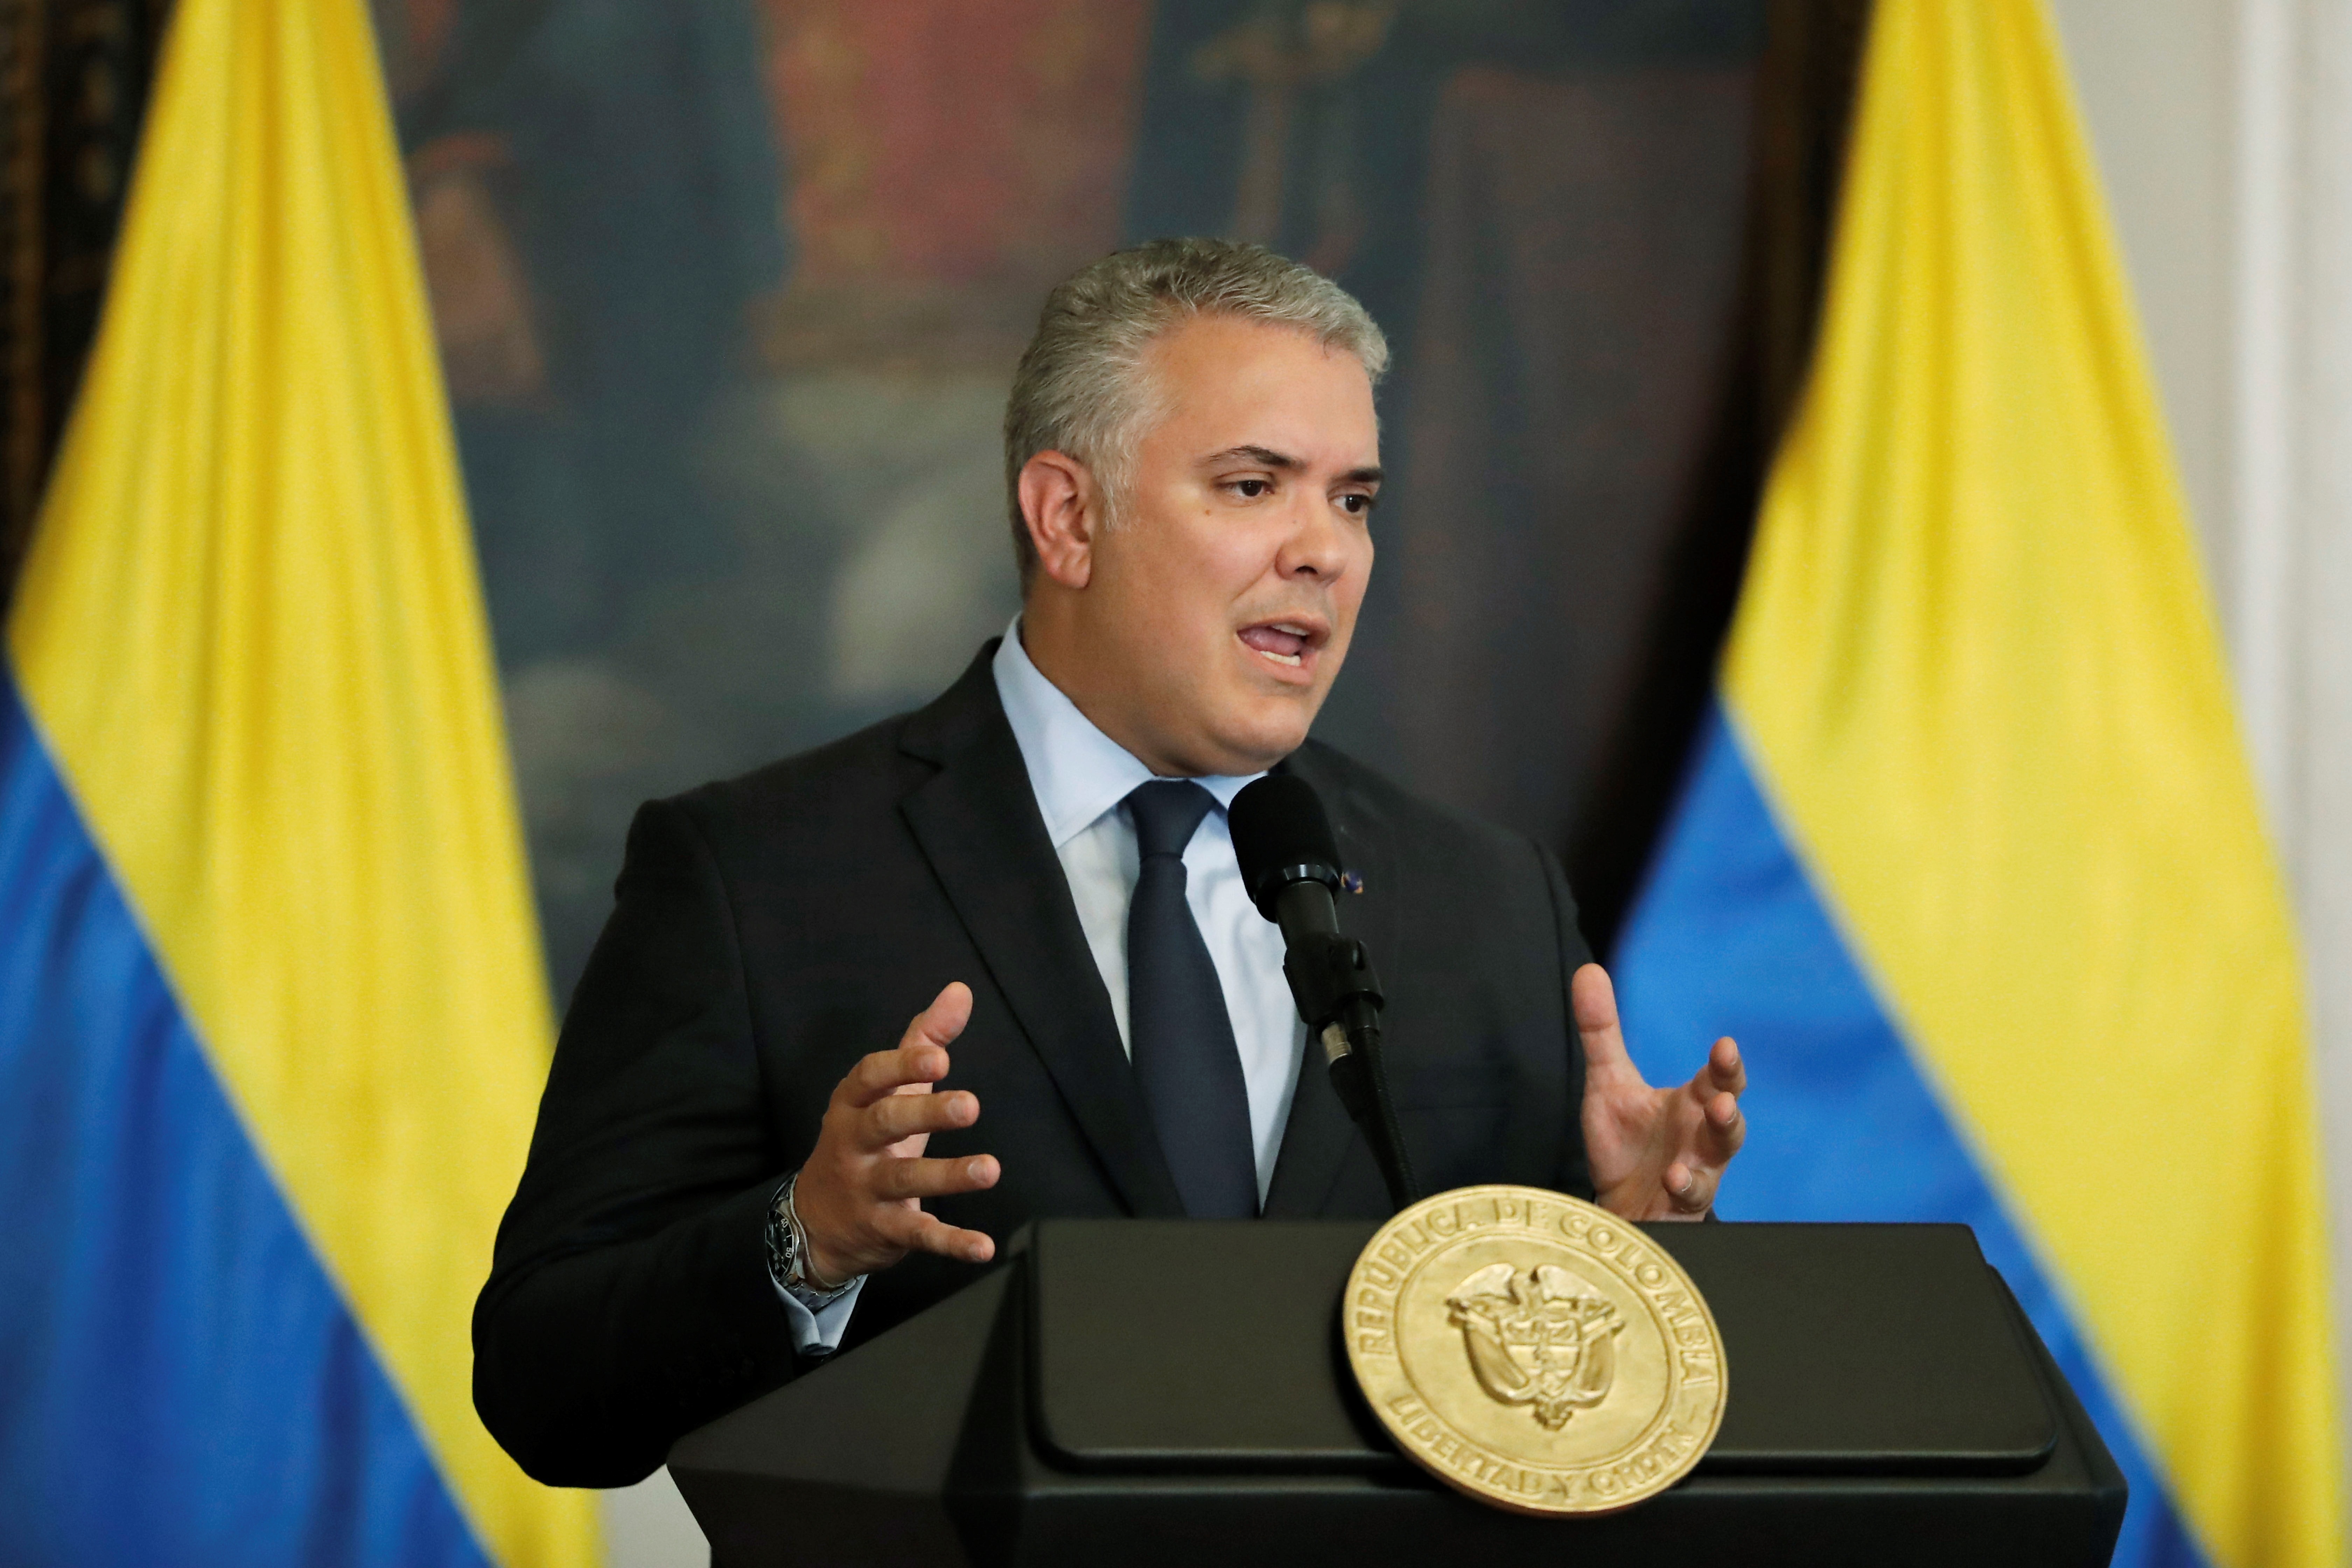 Duque remarcó el carácter criminal de Maduro: “Es el Putin latinoamericano”